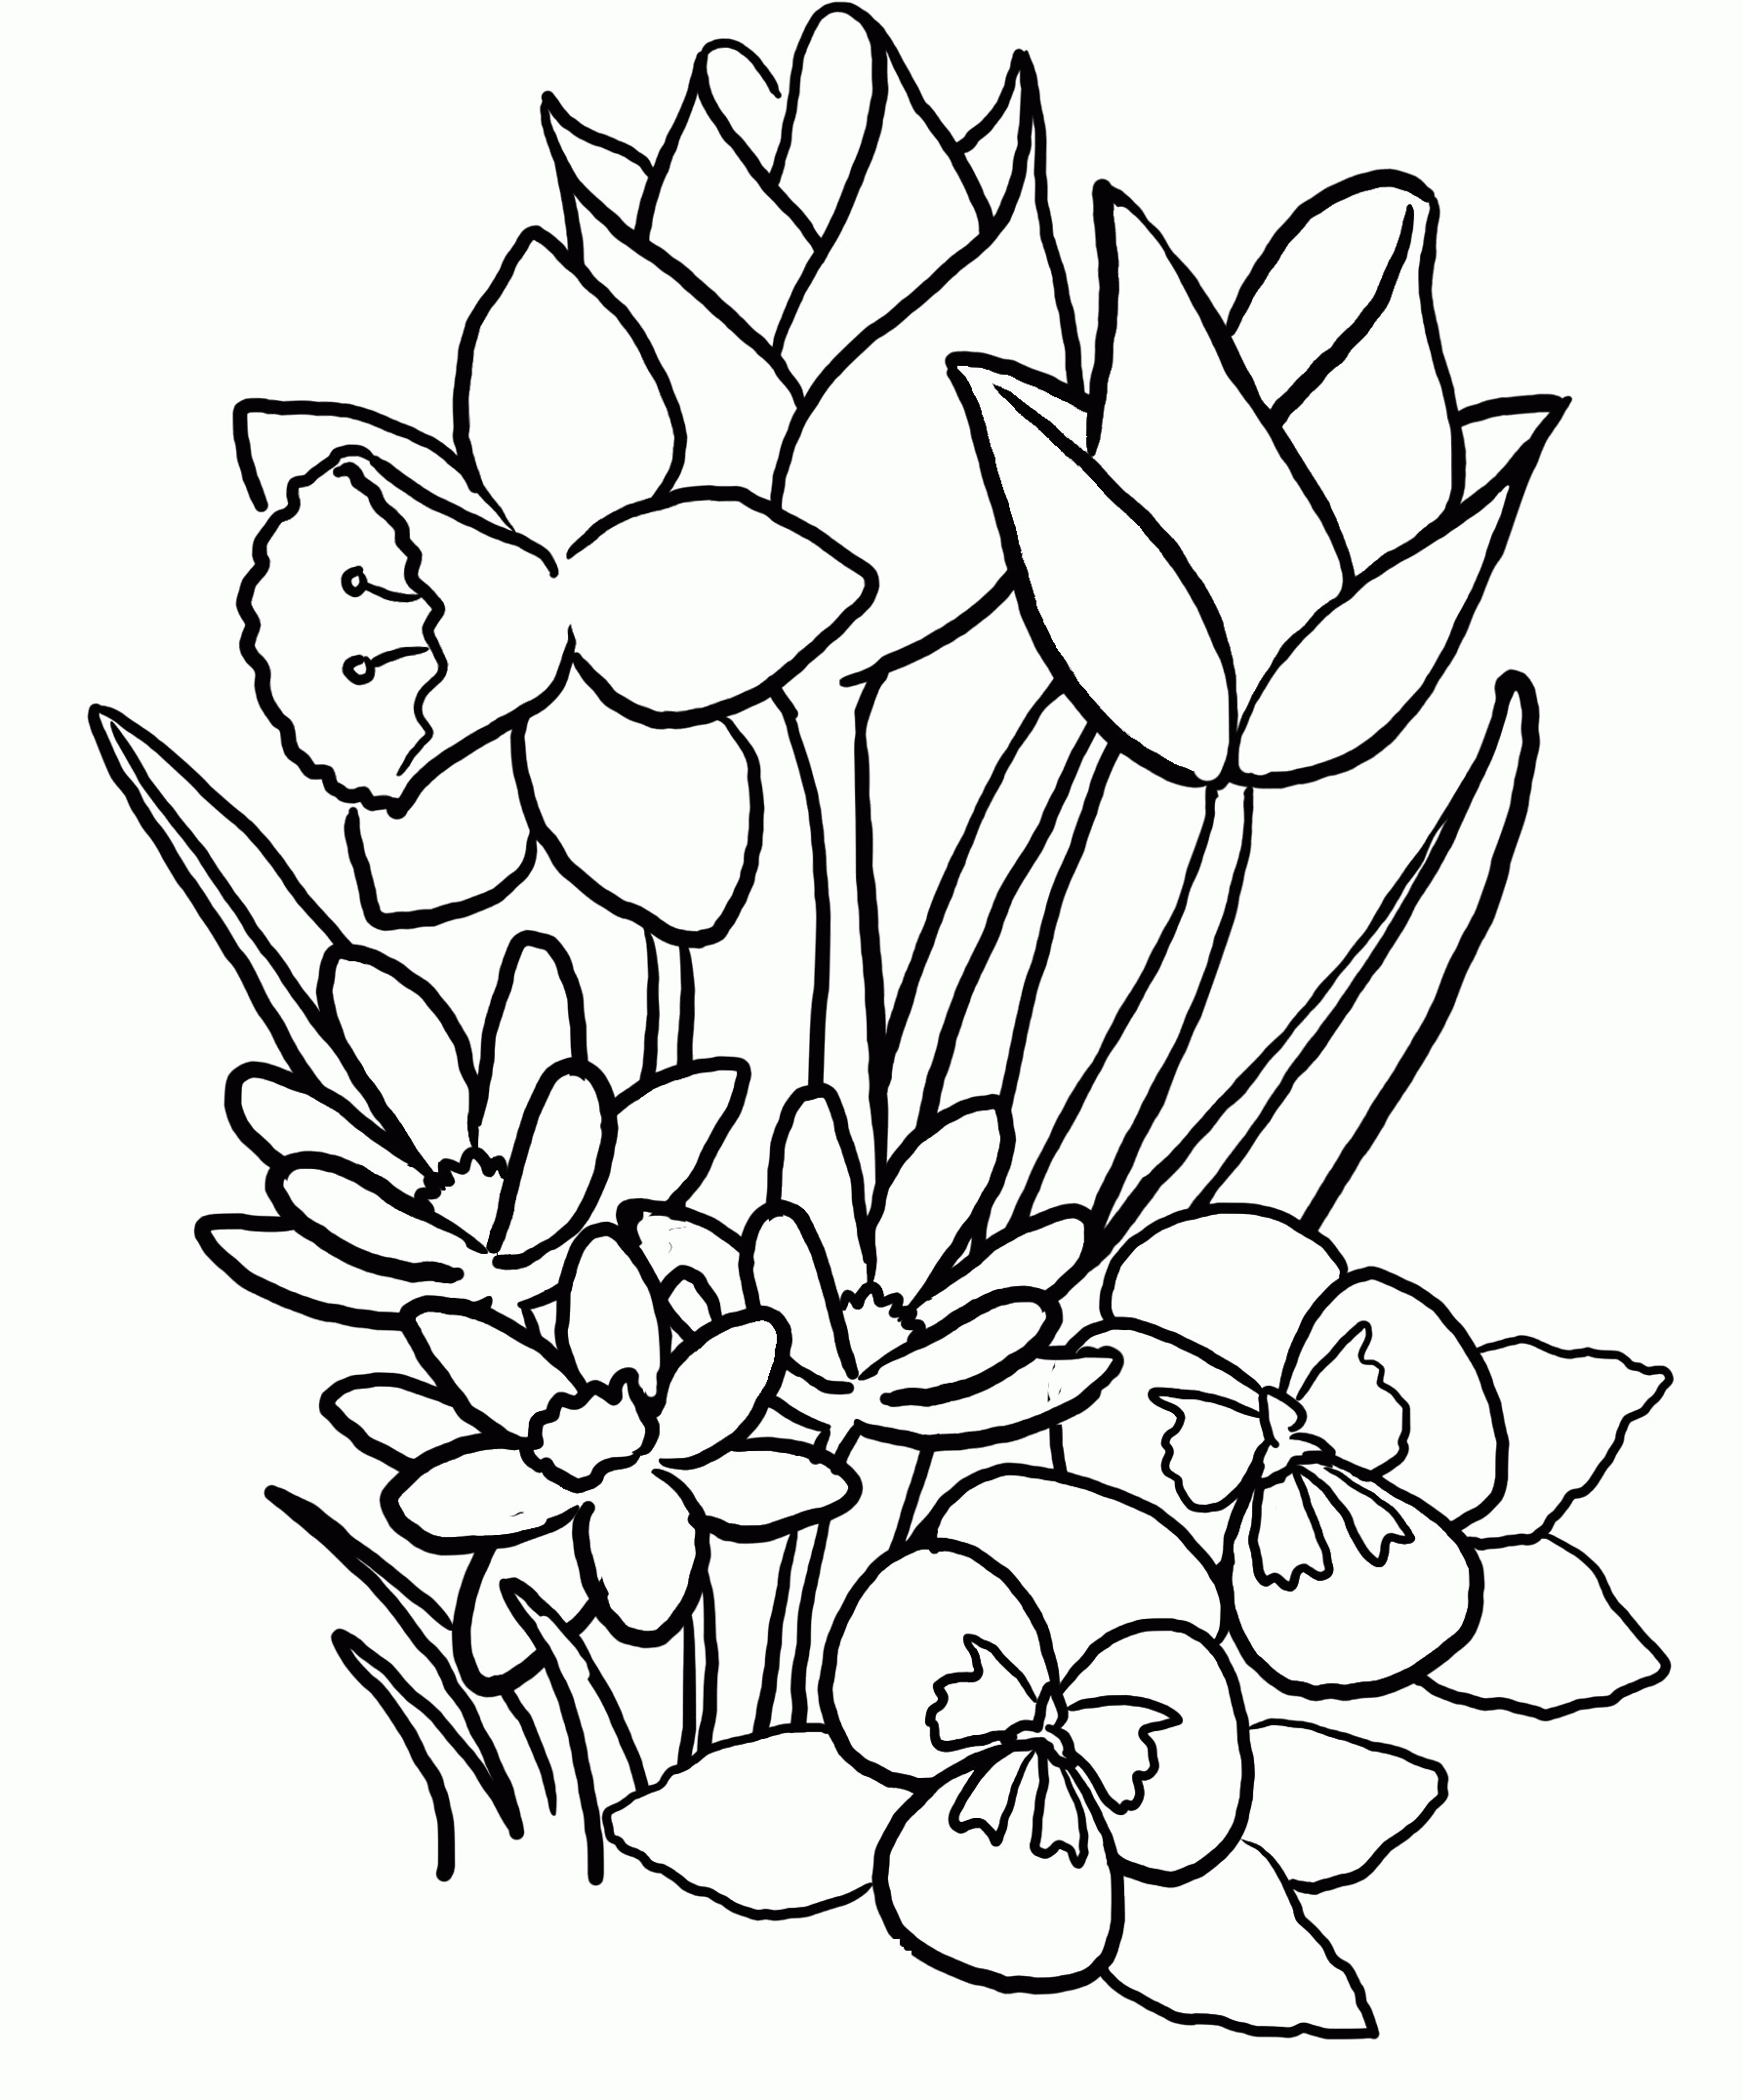 Flower Coloring Pages | UniqueColoringPages